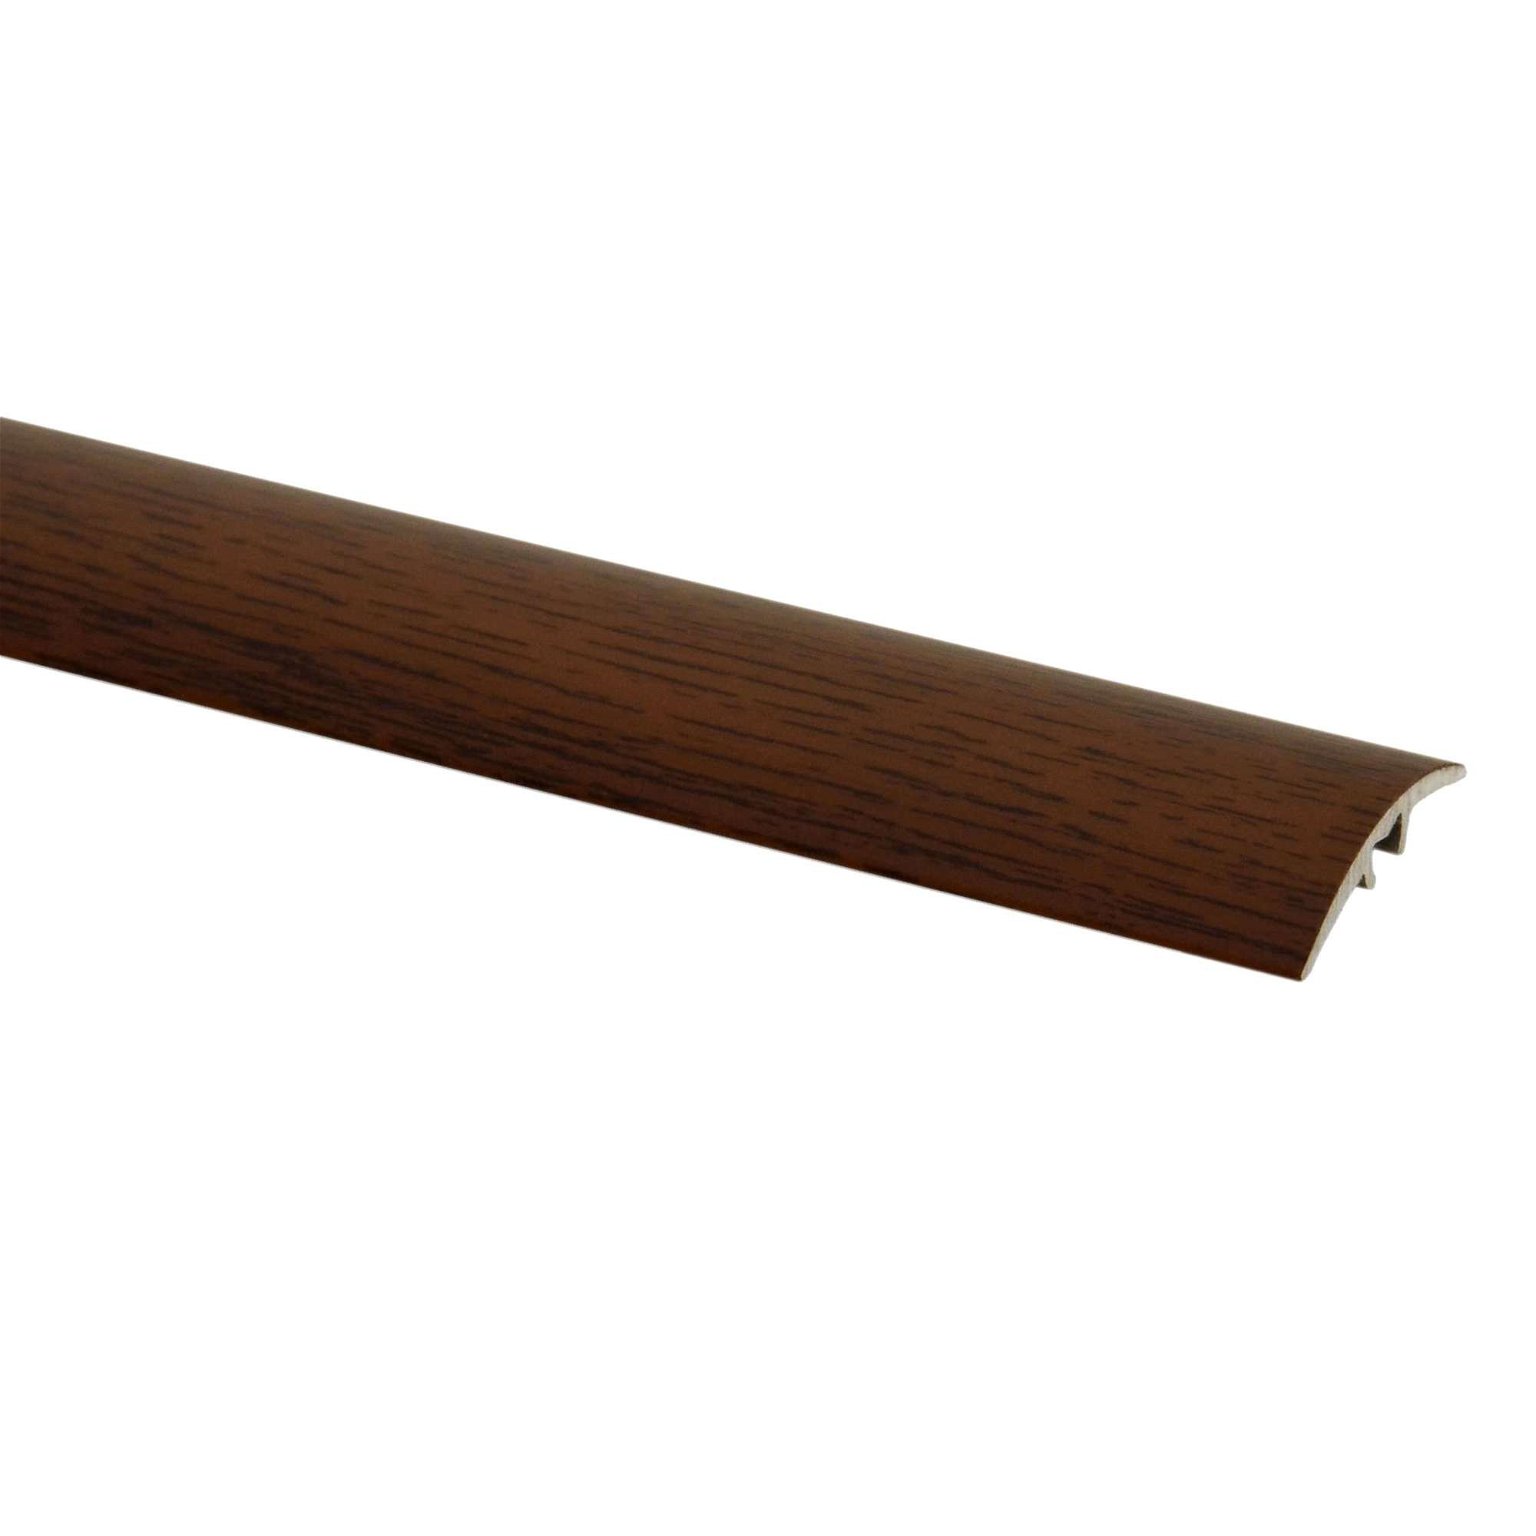 Aliumininė grindų juostelė SM1 W11, amerikietiško riešuto sp., 30 mm pločio, 186 cm ilgio